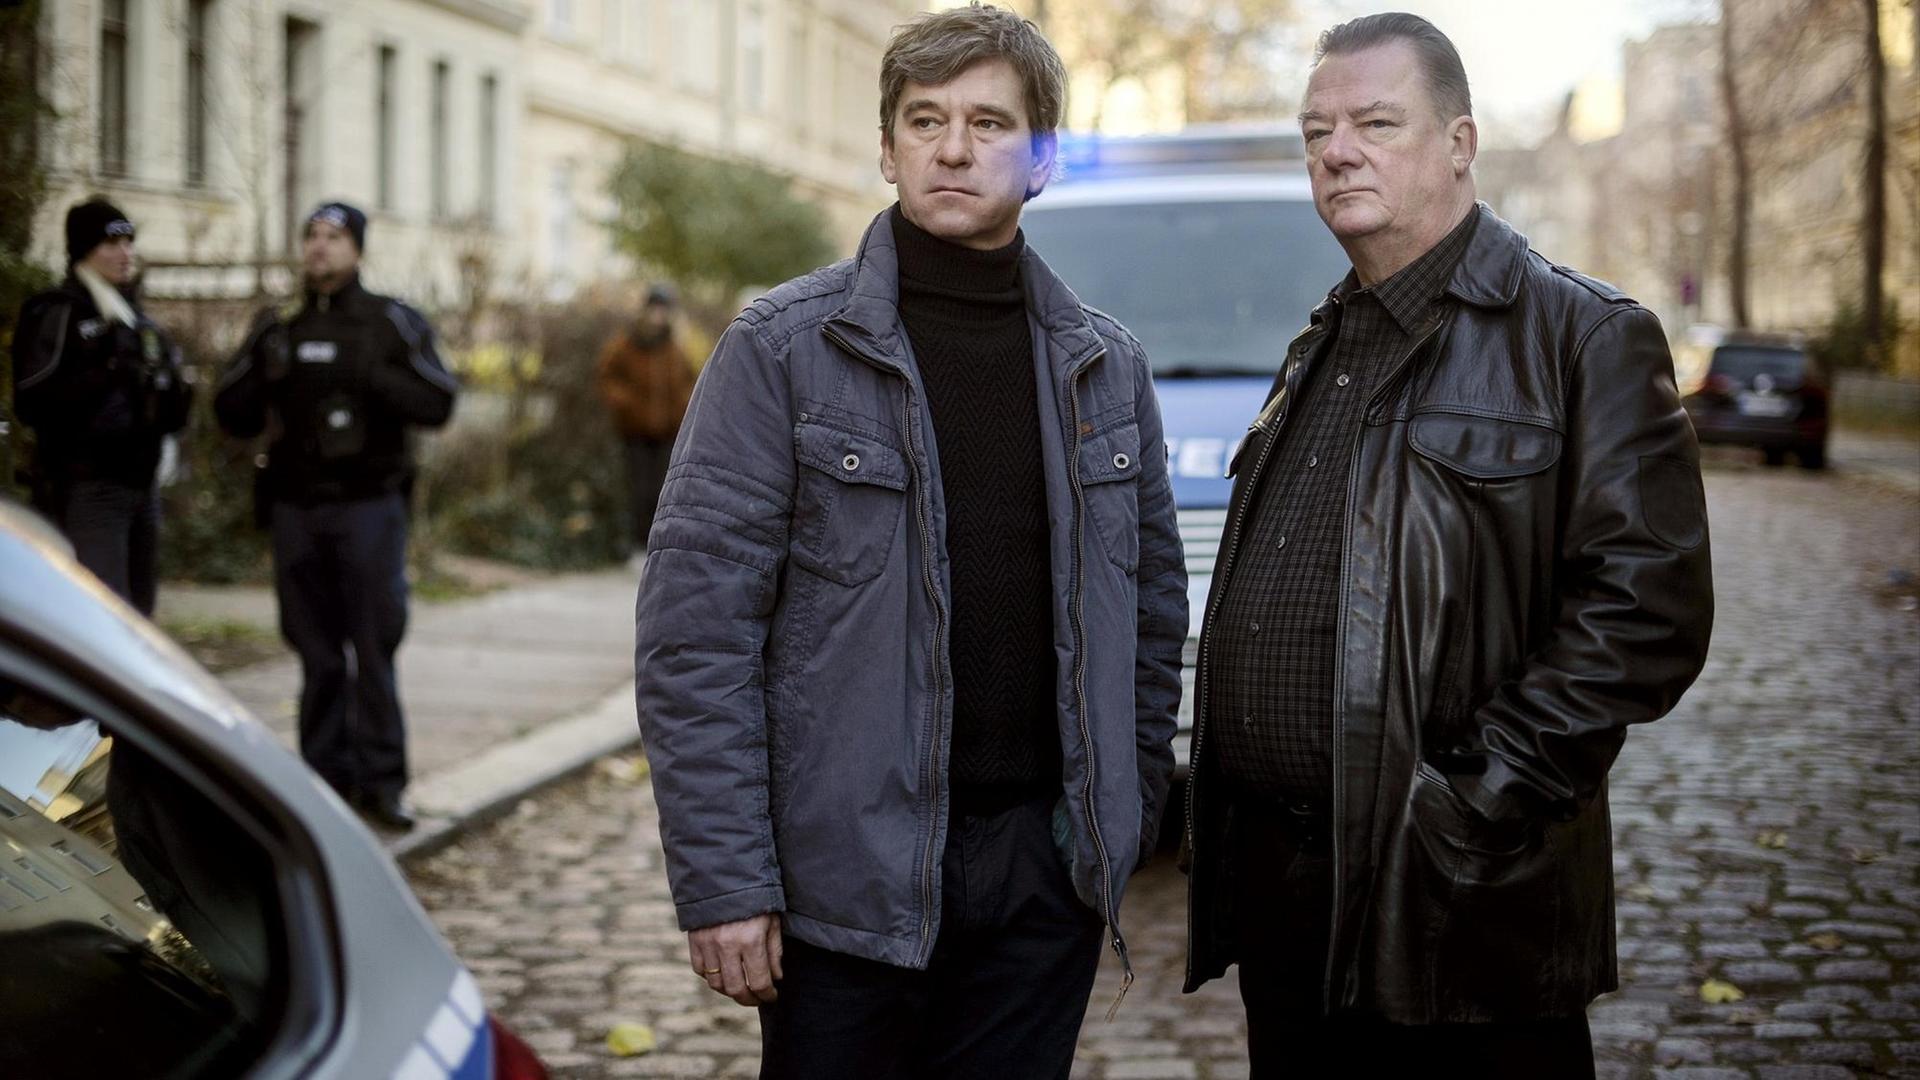 Kommissar Michael Lehmann (Peter Schneider) und Kommissar Henry Koitzsch (Peter Kurth) am Tatort.